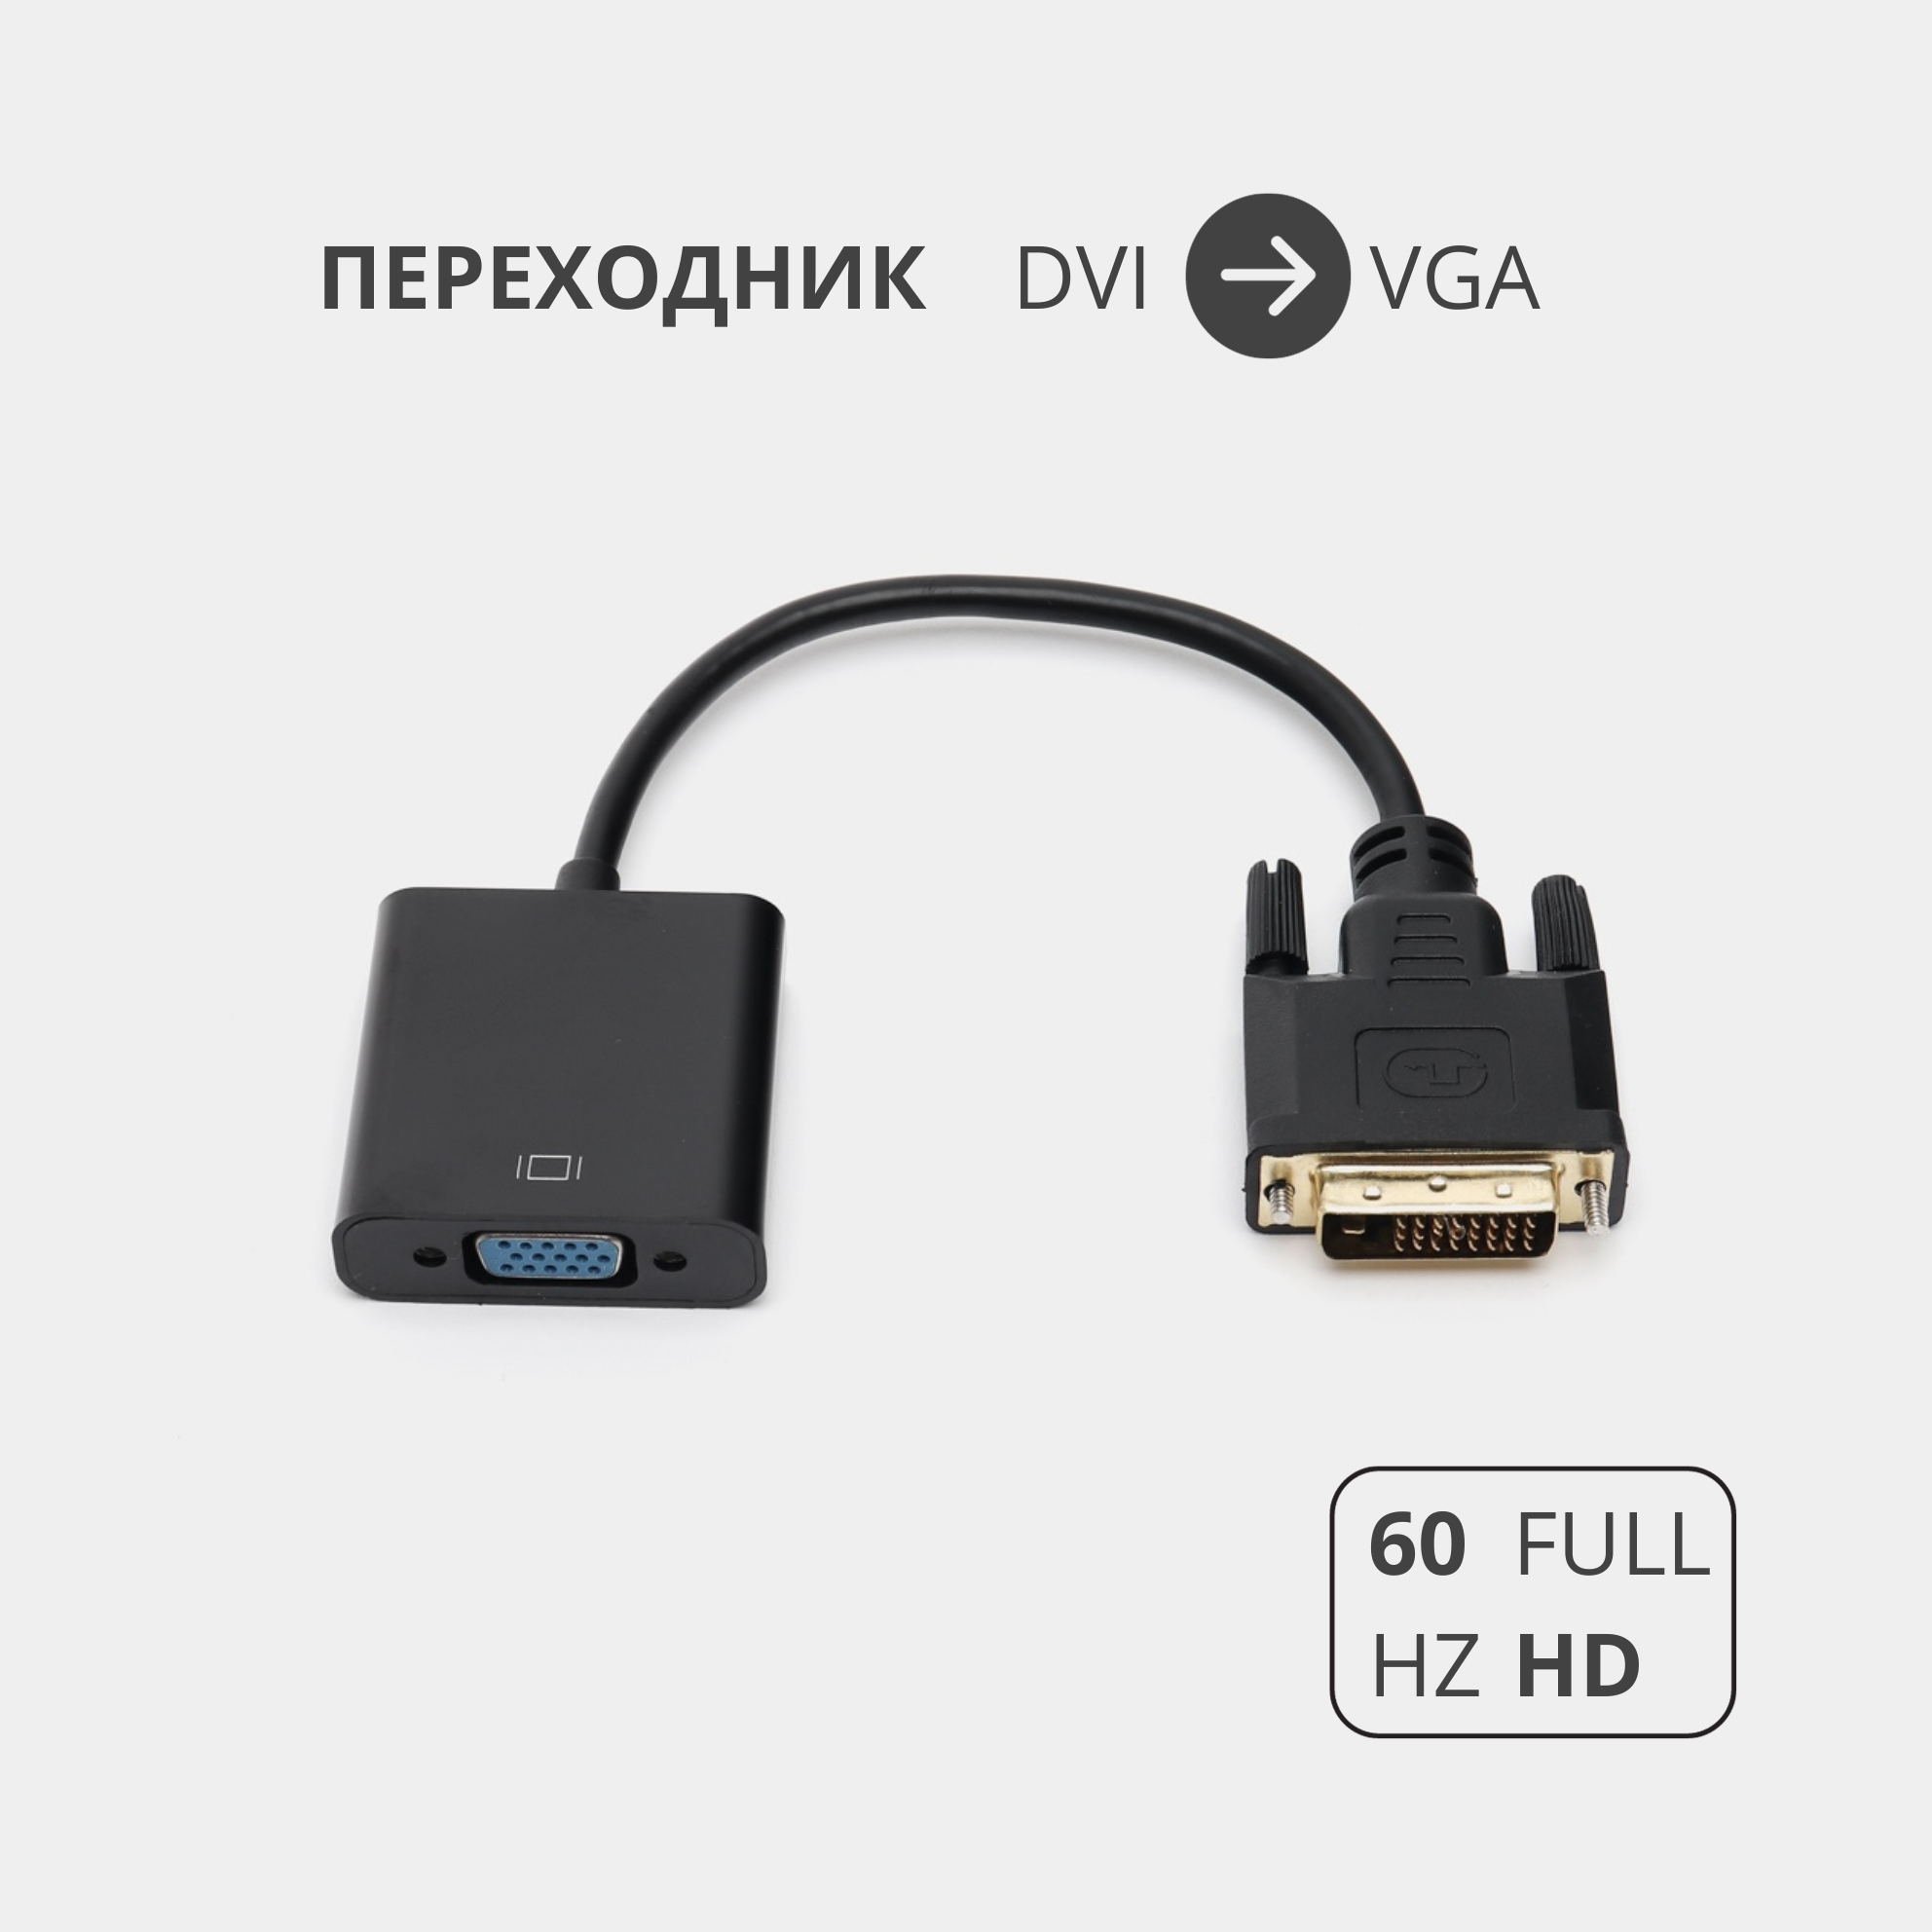 Переходник адаптер DVI-D на VGA для подключения компьютера монитора и видеокарты